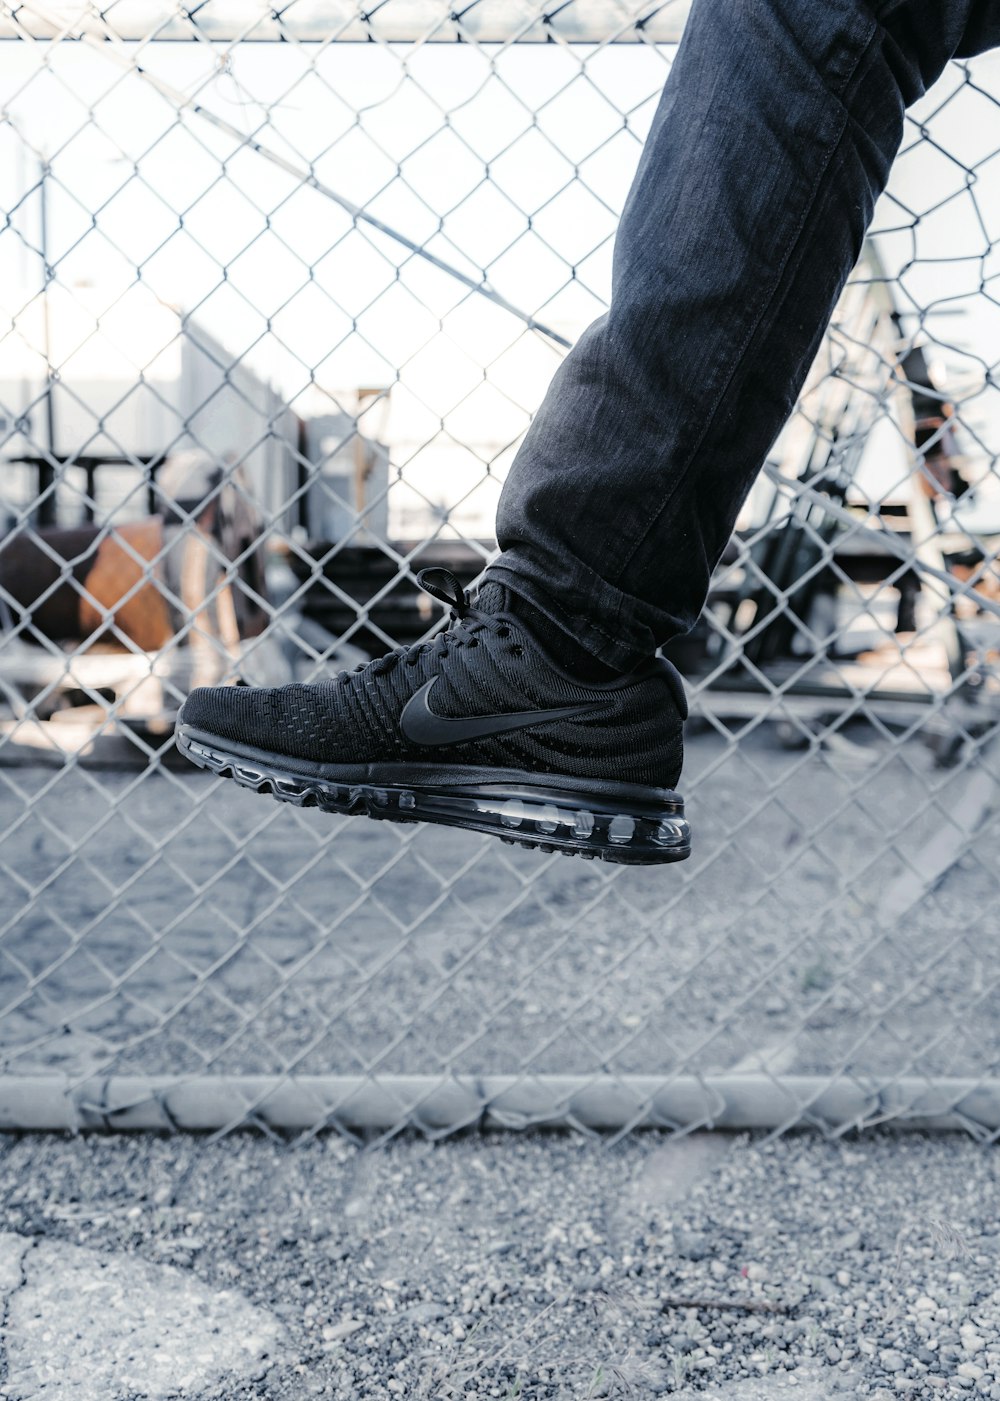 persona zapatillas Nike negras – unidos gratis en Unsplash